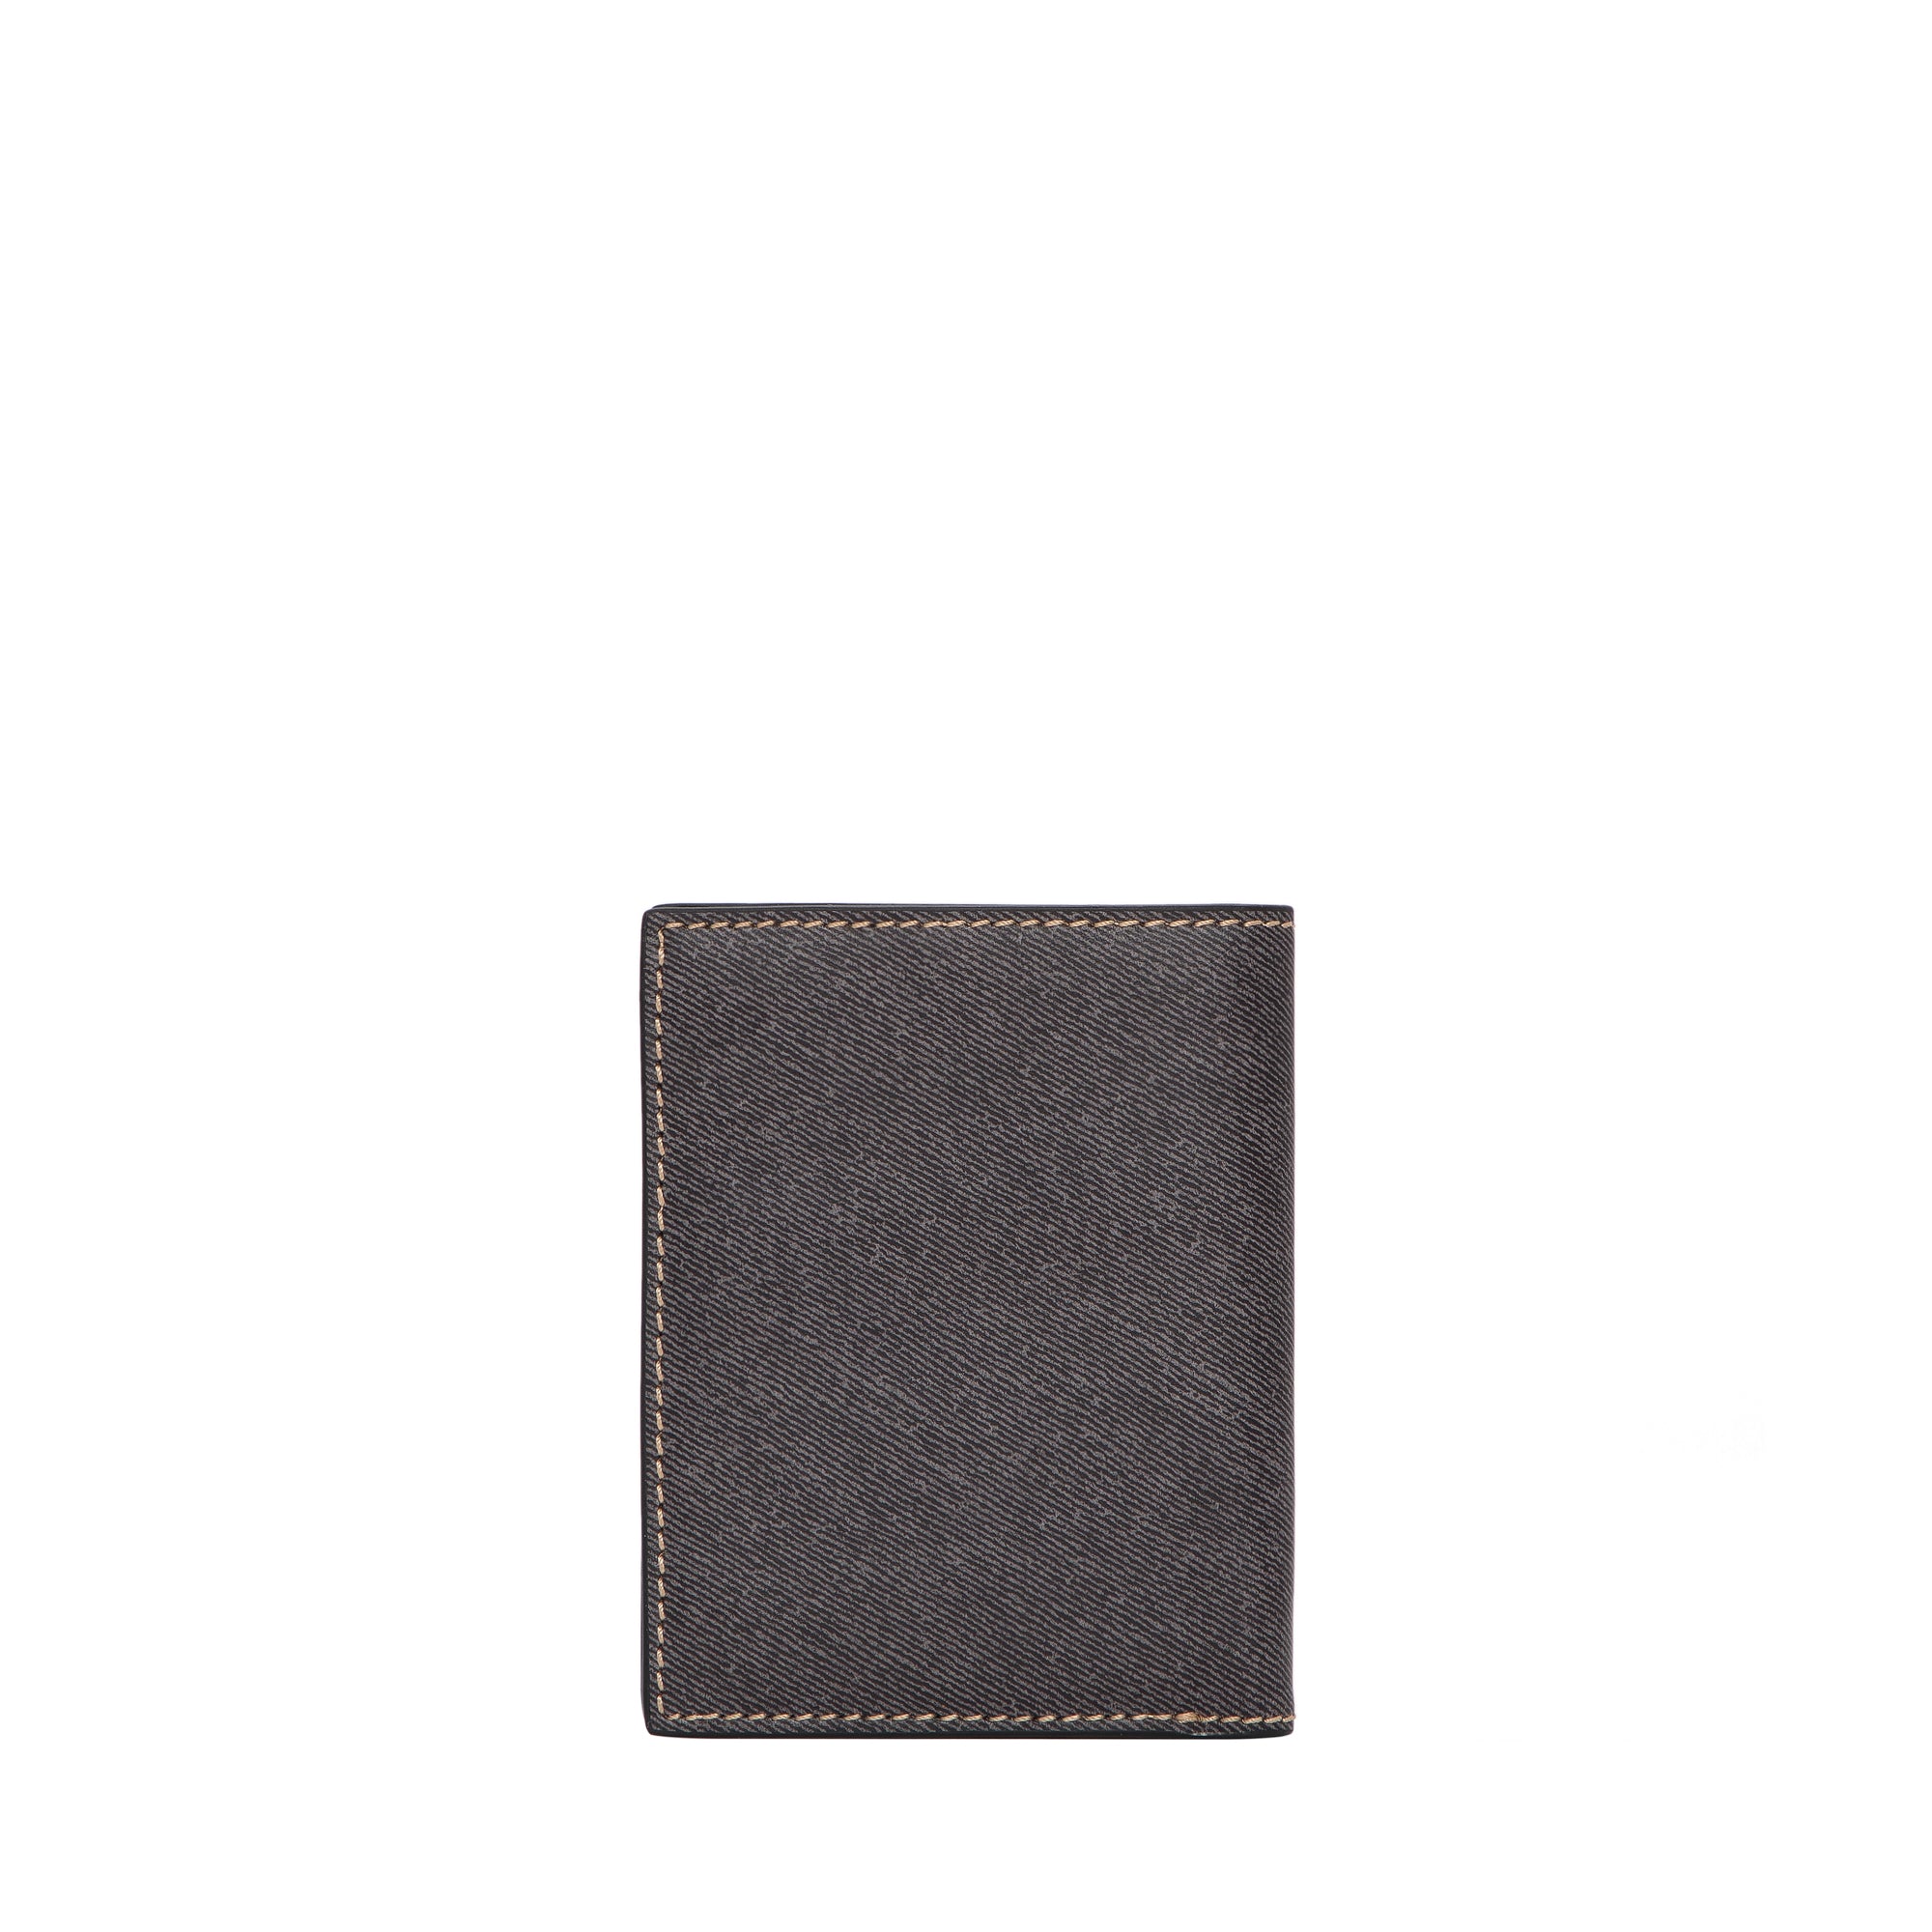 TOUGH JEANSMITH Pocket 短銀包 #TW122-002